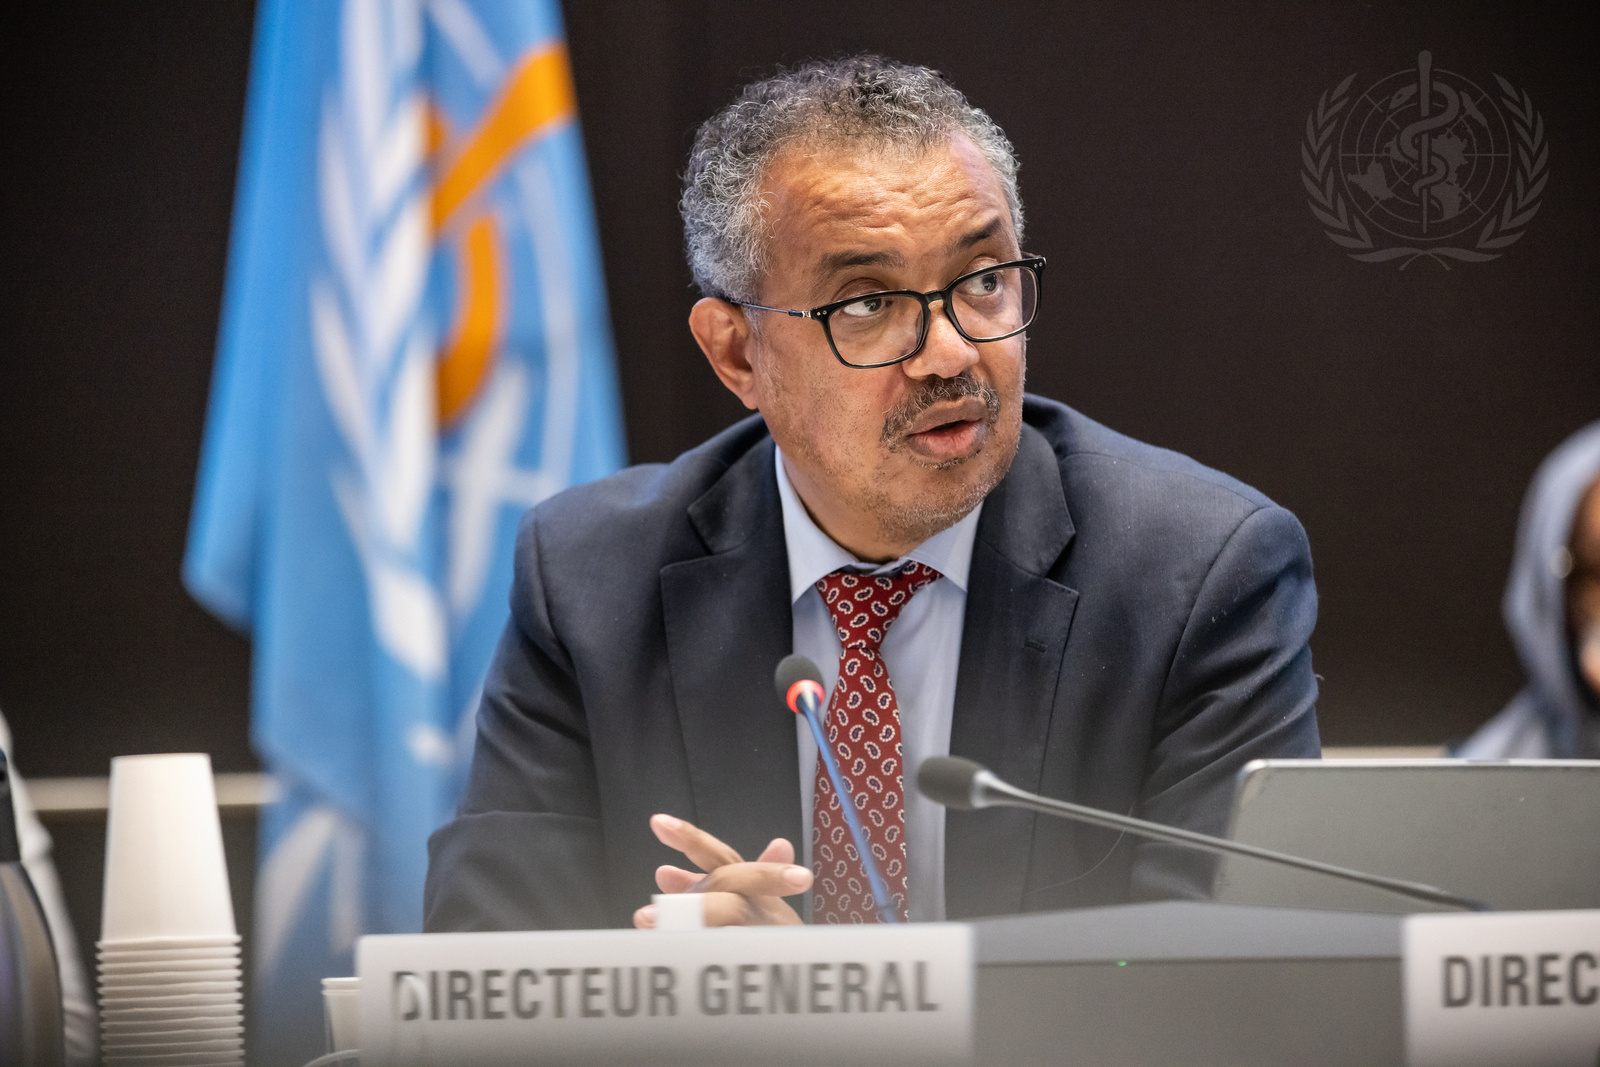 WHO Director-General Dr Tedros Adhanom Ghebreyesus. Credit: WHO / Pierre Albouy